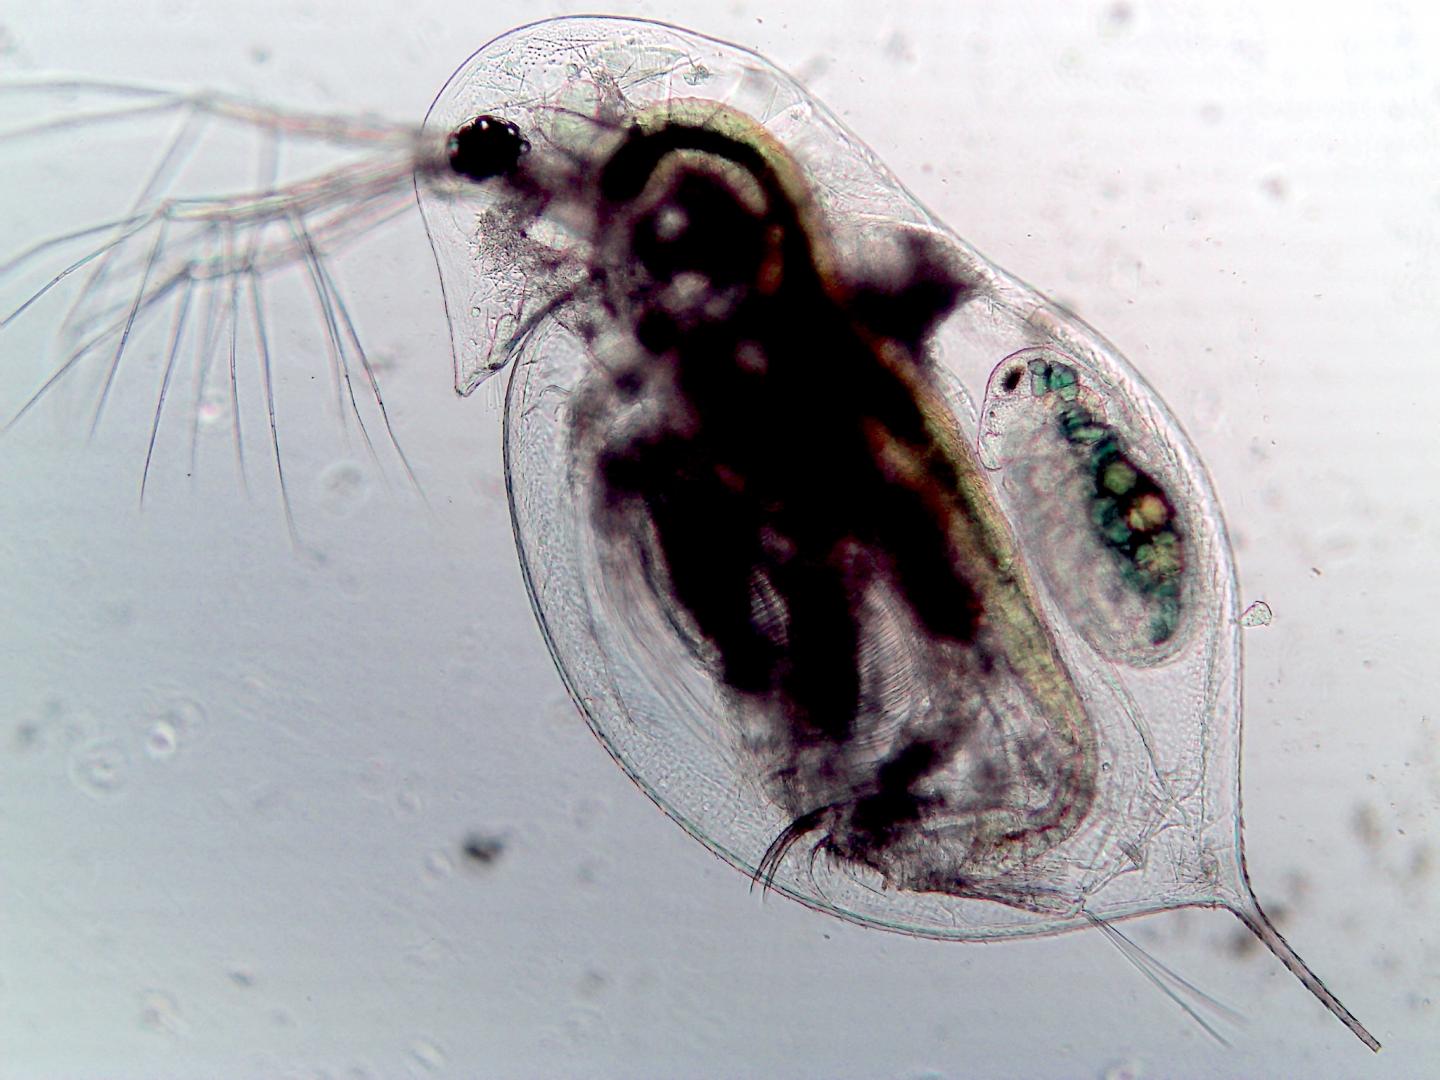 Infected zooplankton (Daphnia dentifera)